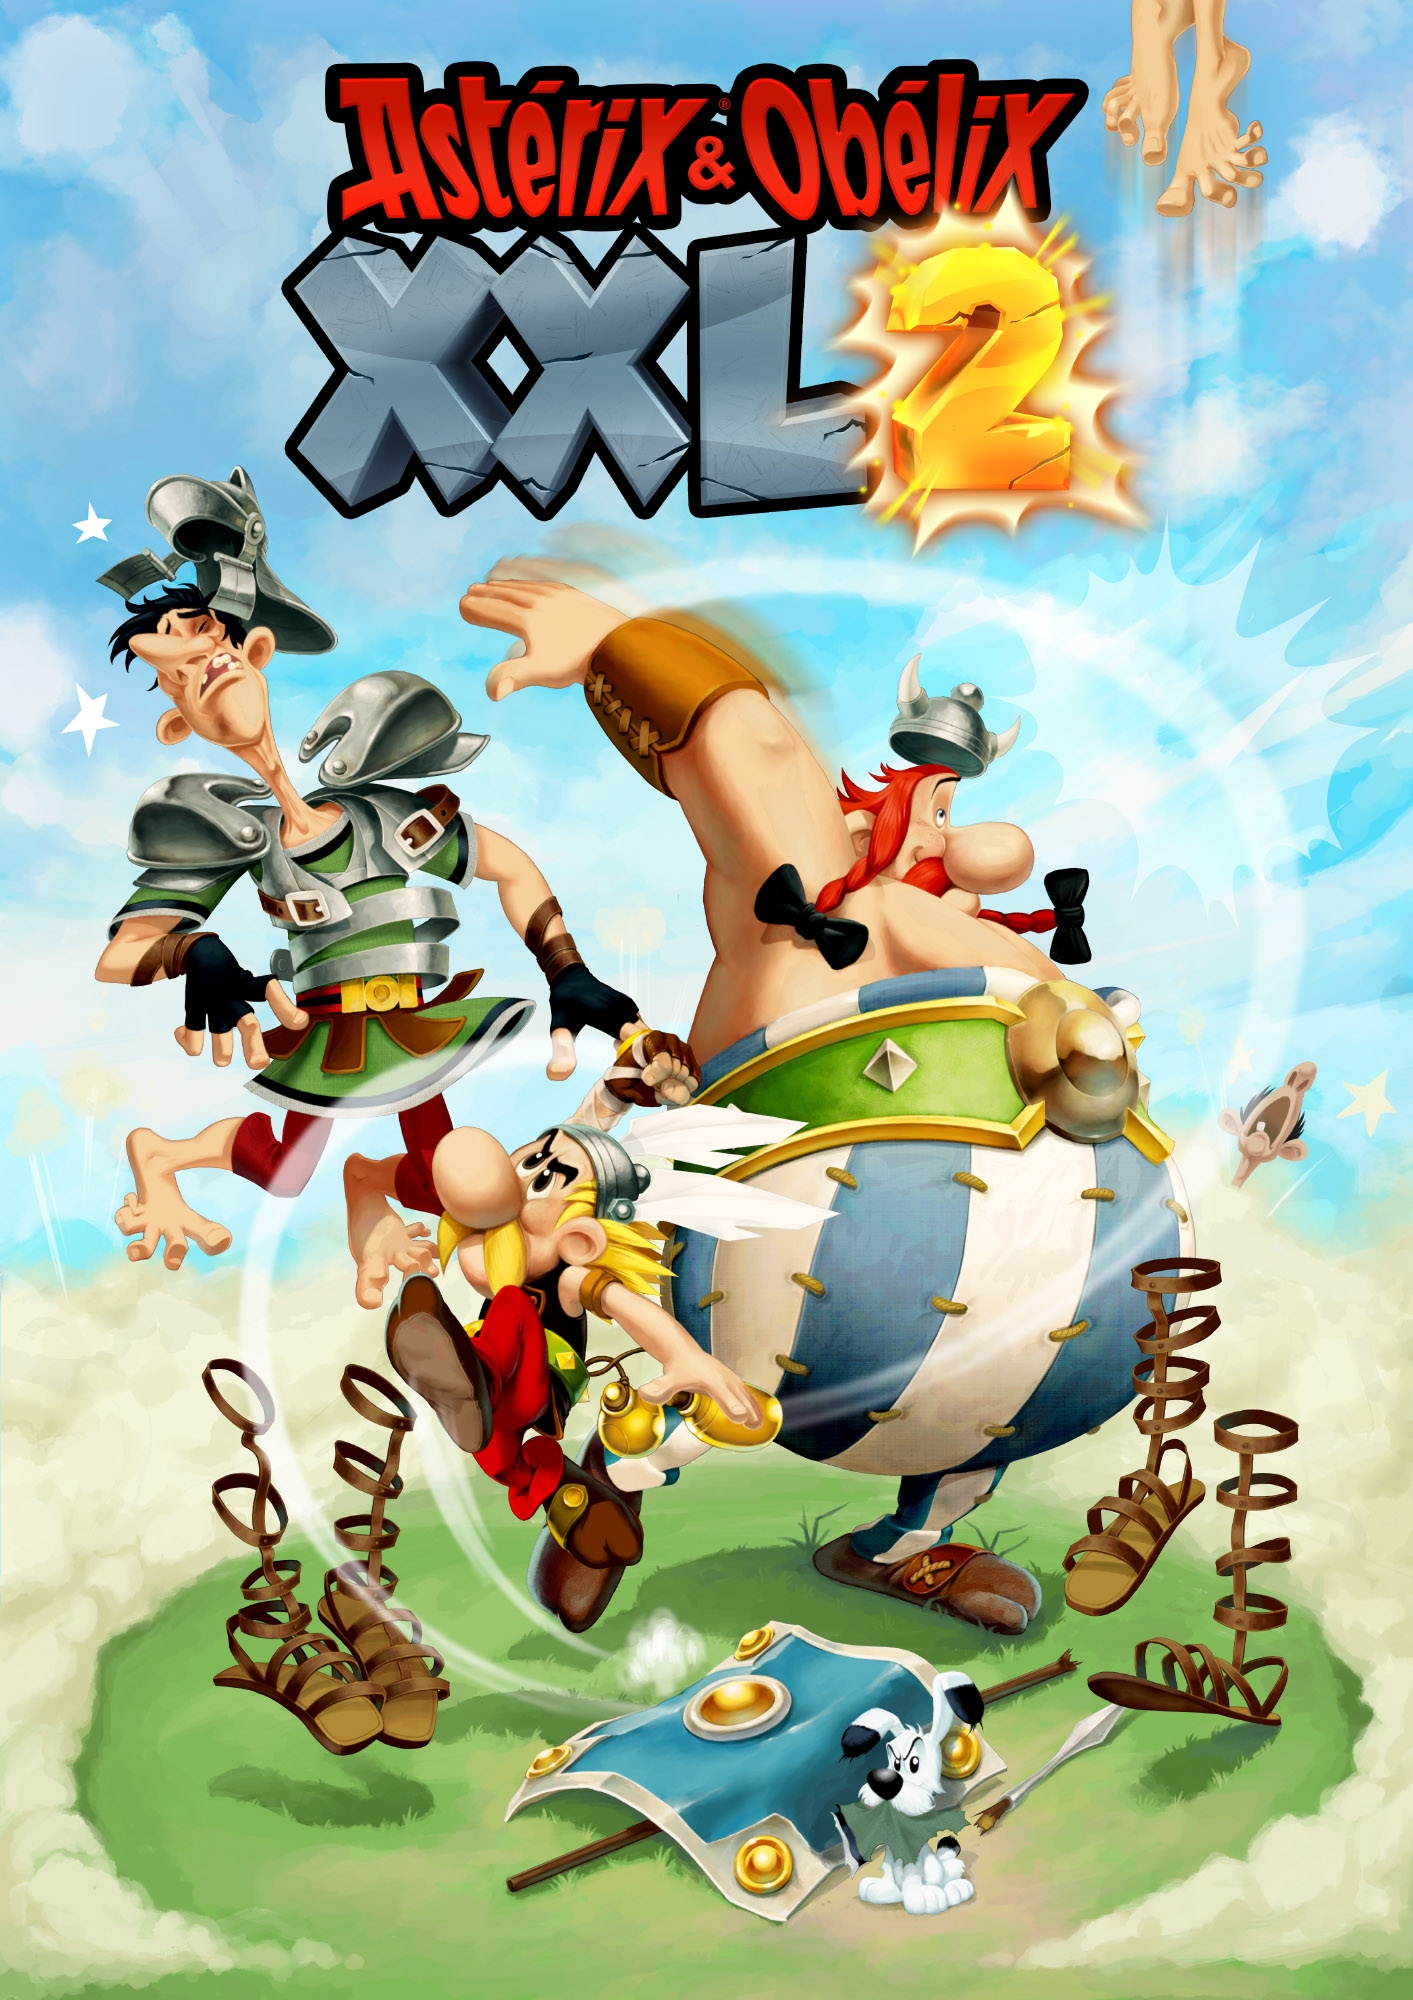 asterix and obelix xxl download